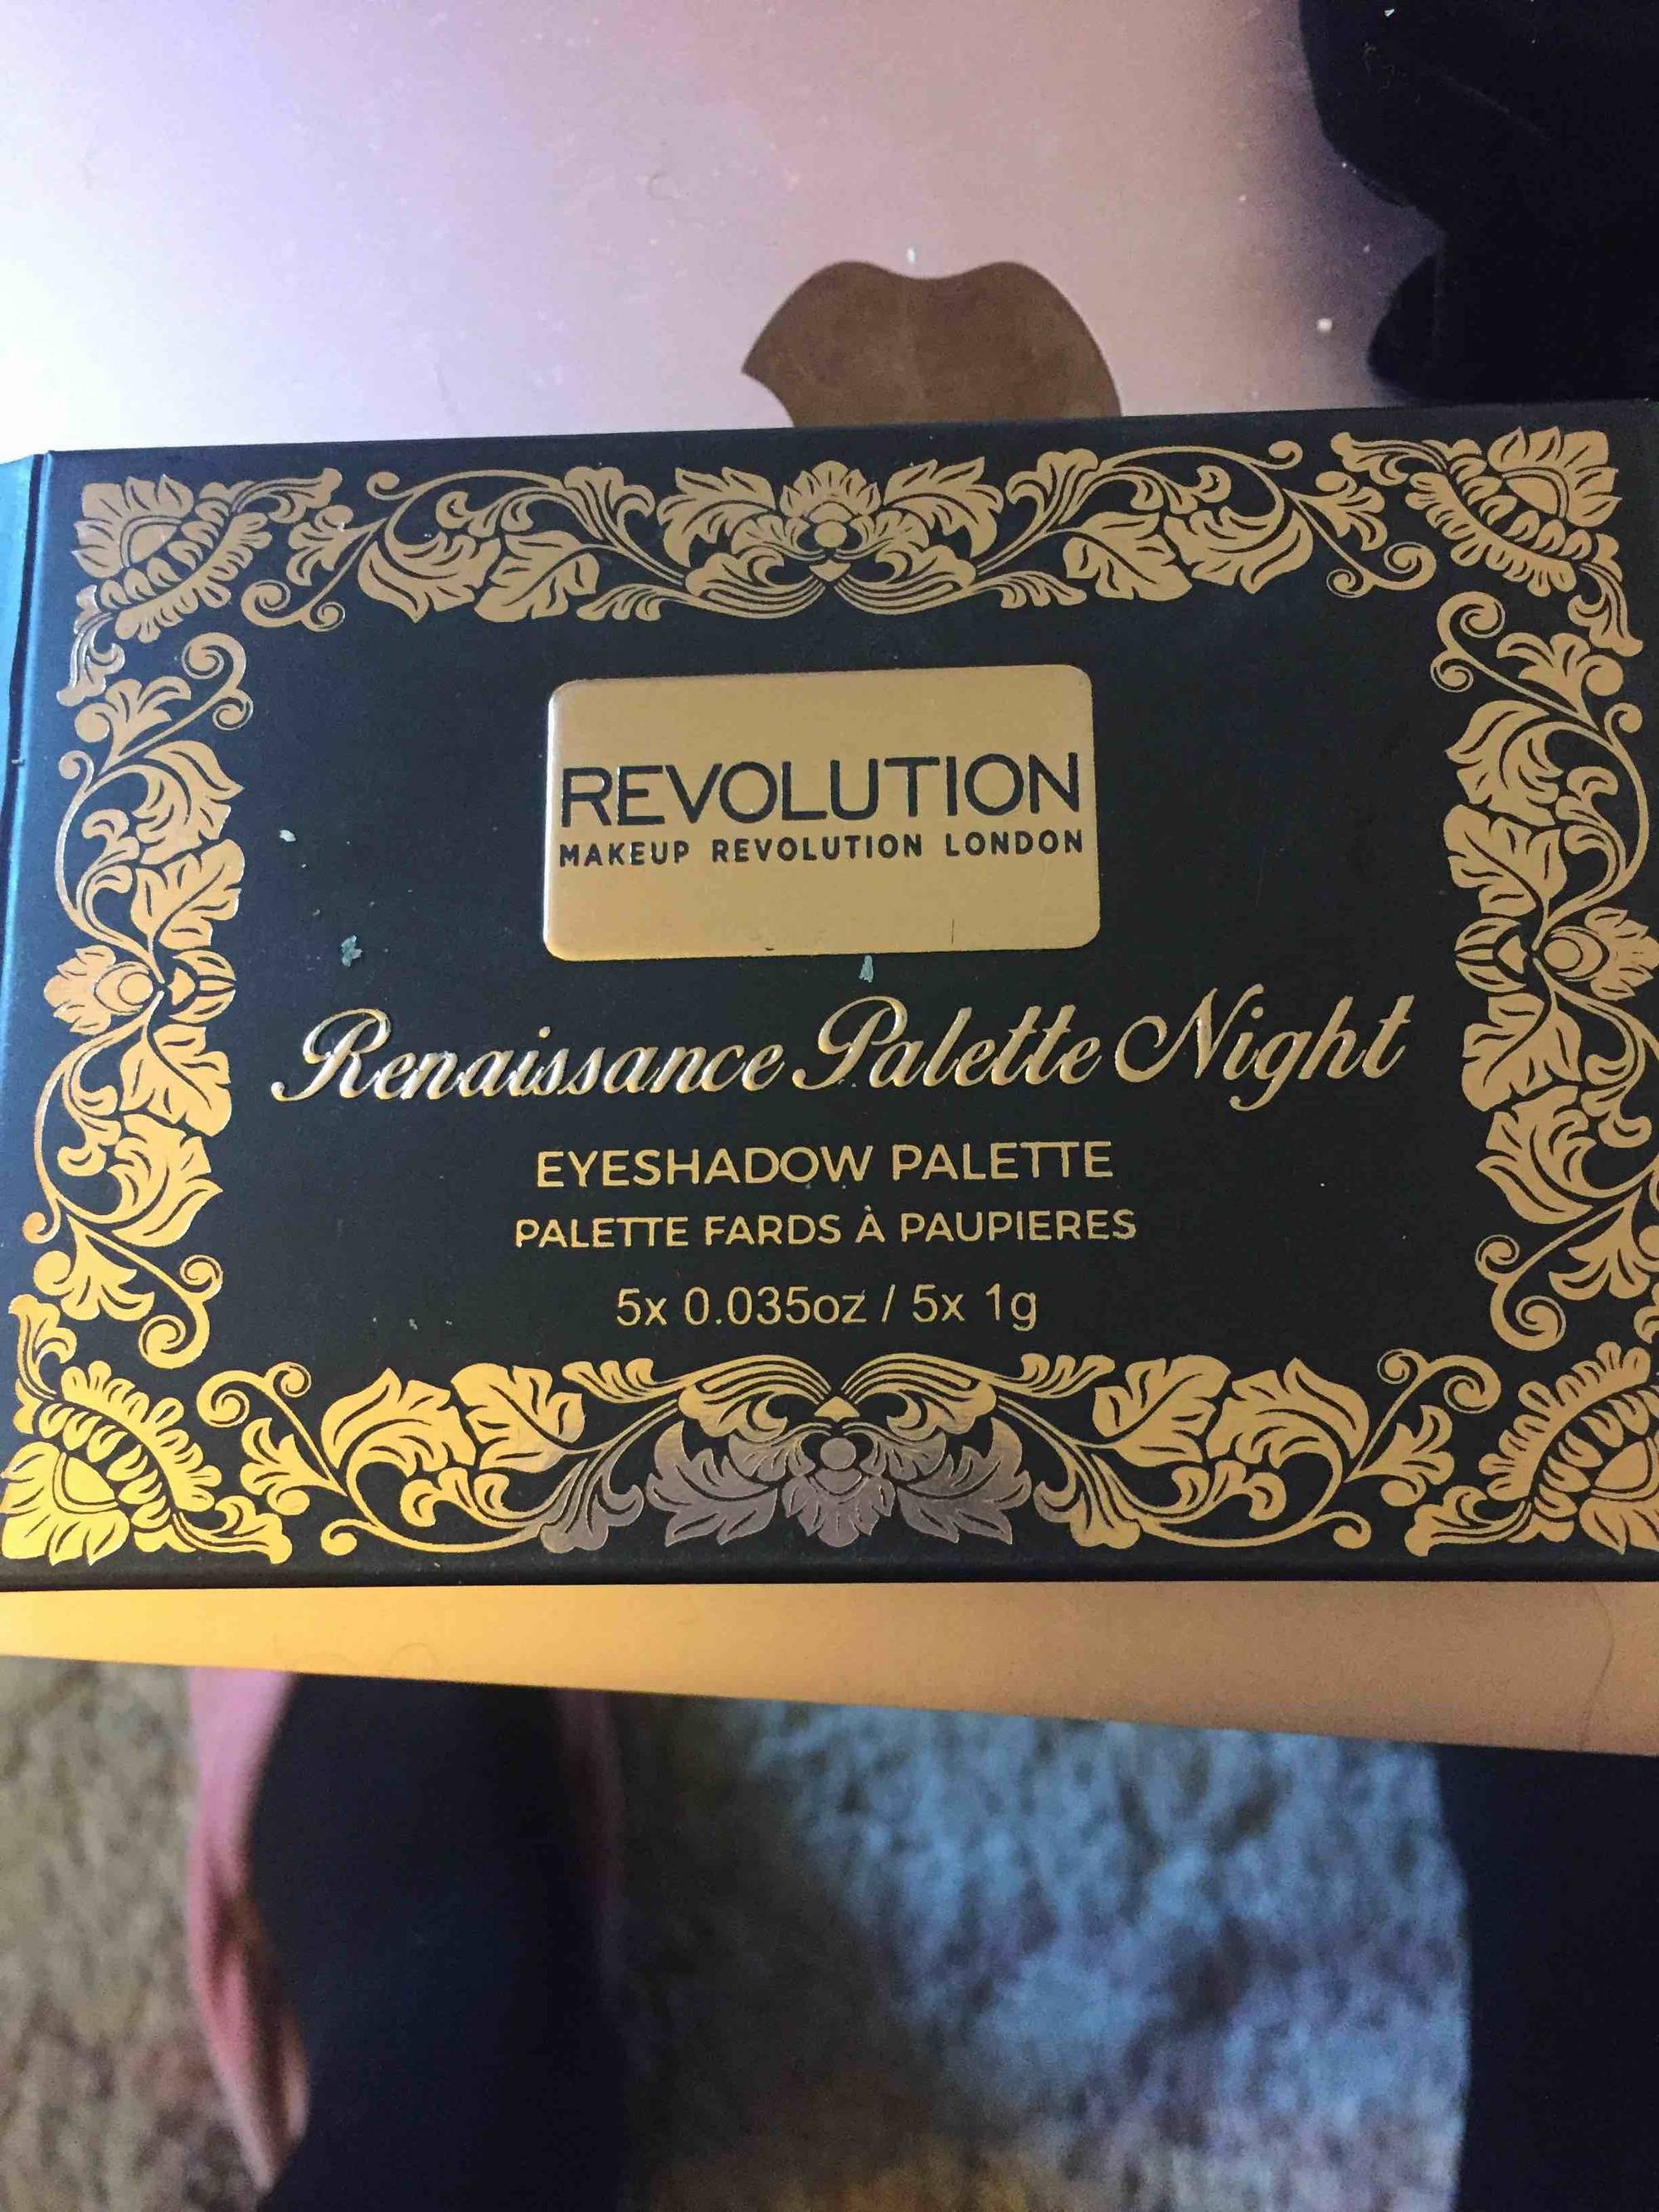 MAKEUP REVOLUTION - Renaissance Palette Night - Palette fards à paupières